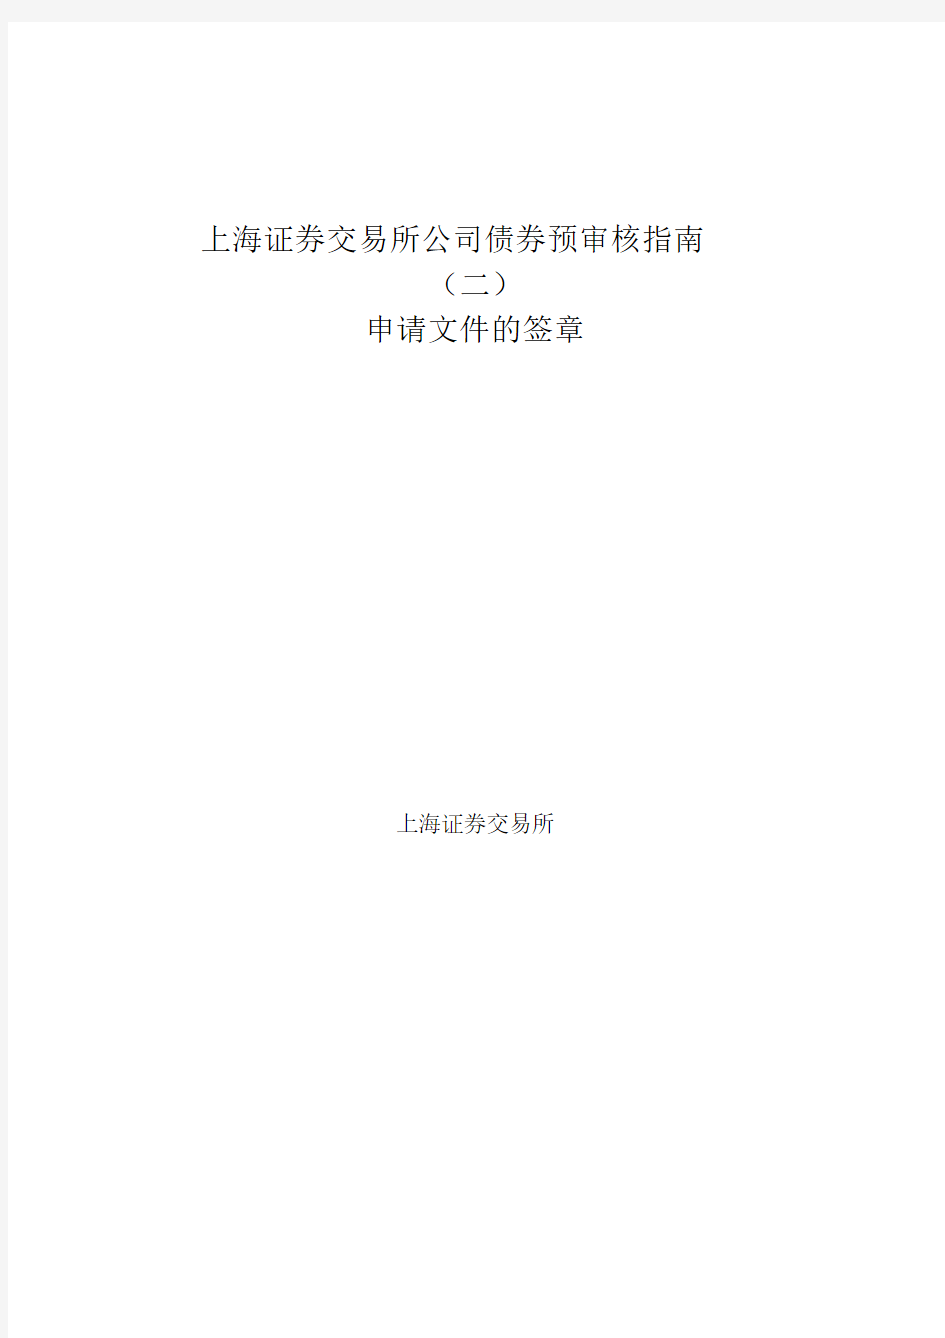 上海证券交易所公司债券预审核指南(二)申请文件的签章